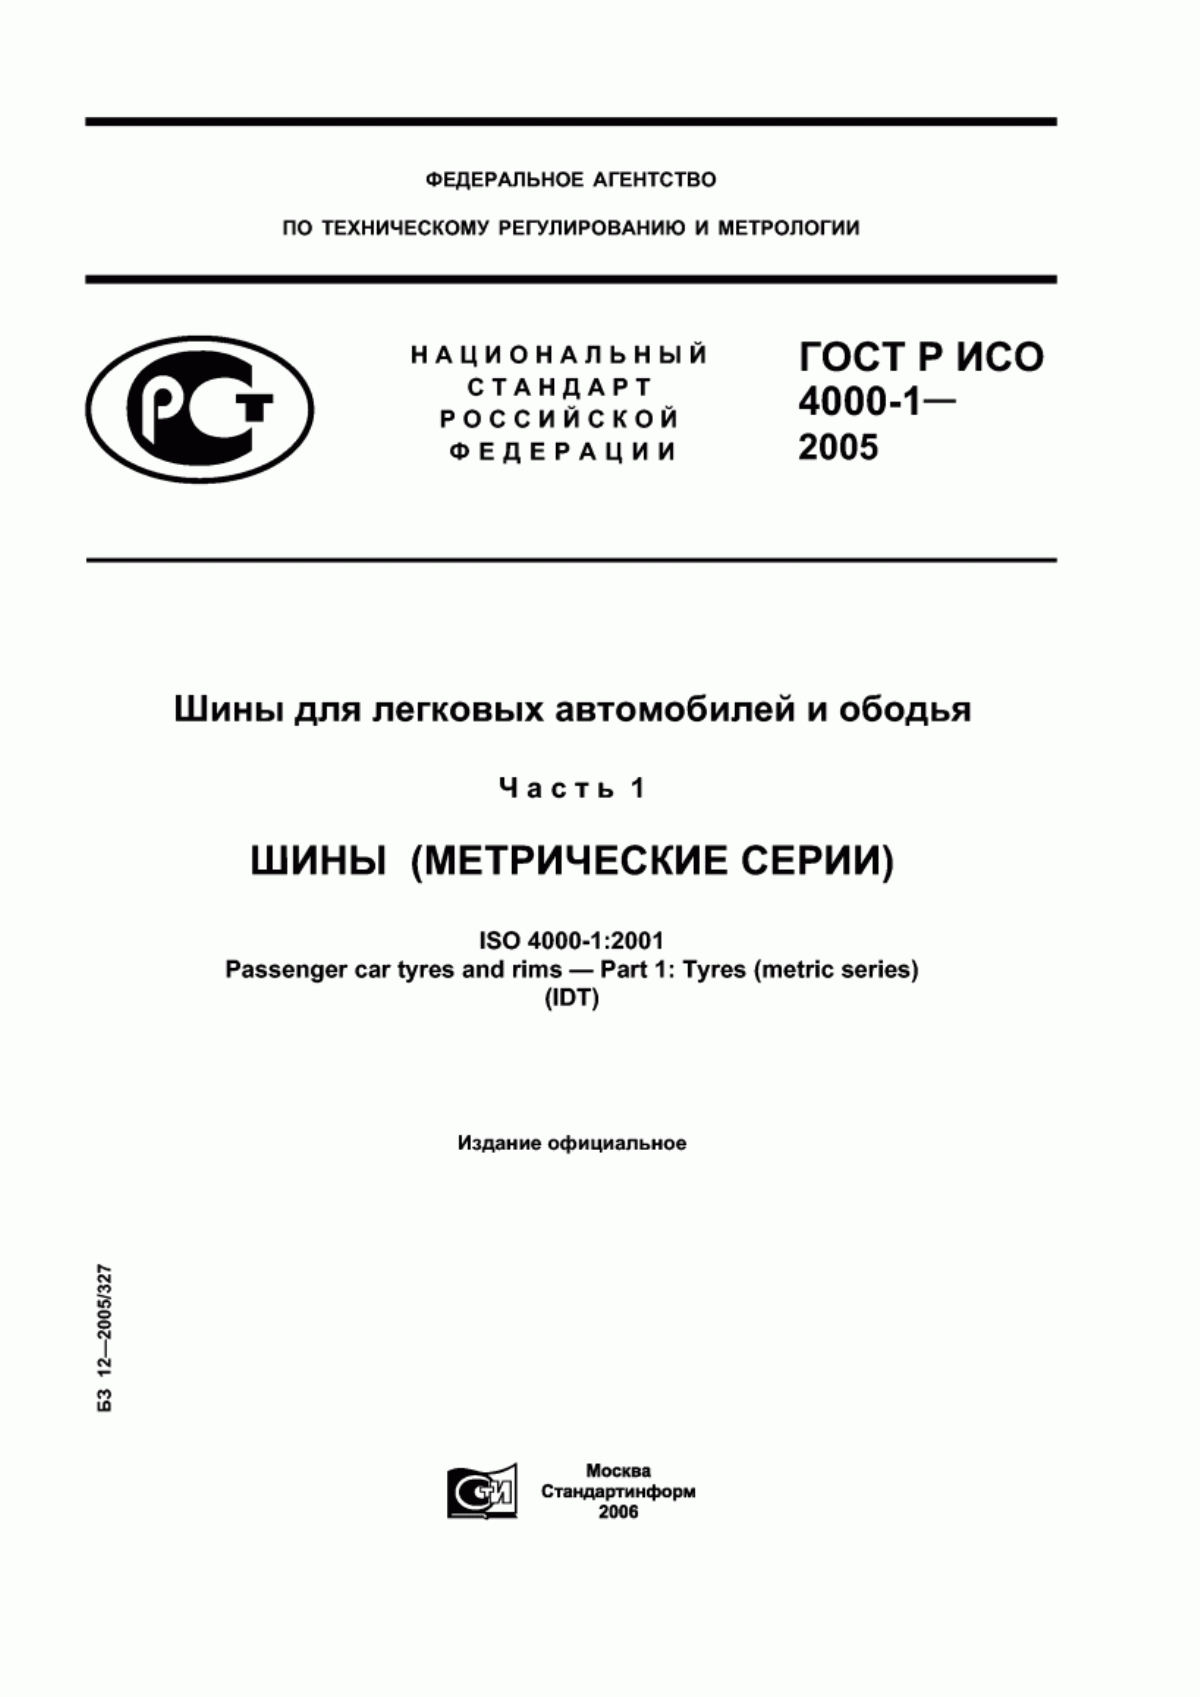 ГОСТ Р ИСО 4000-1-2005 Шины для легковых автомобилей и ободья. Часть 1. Шины (метрические серии)